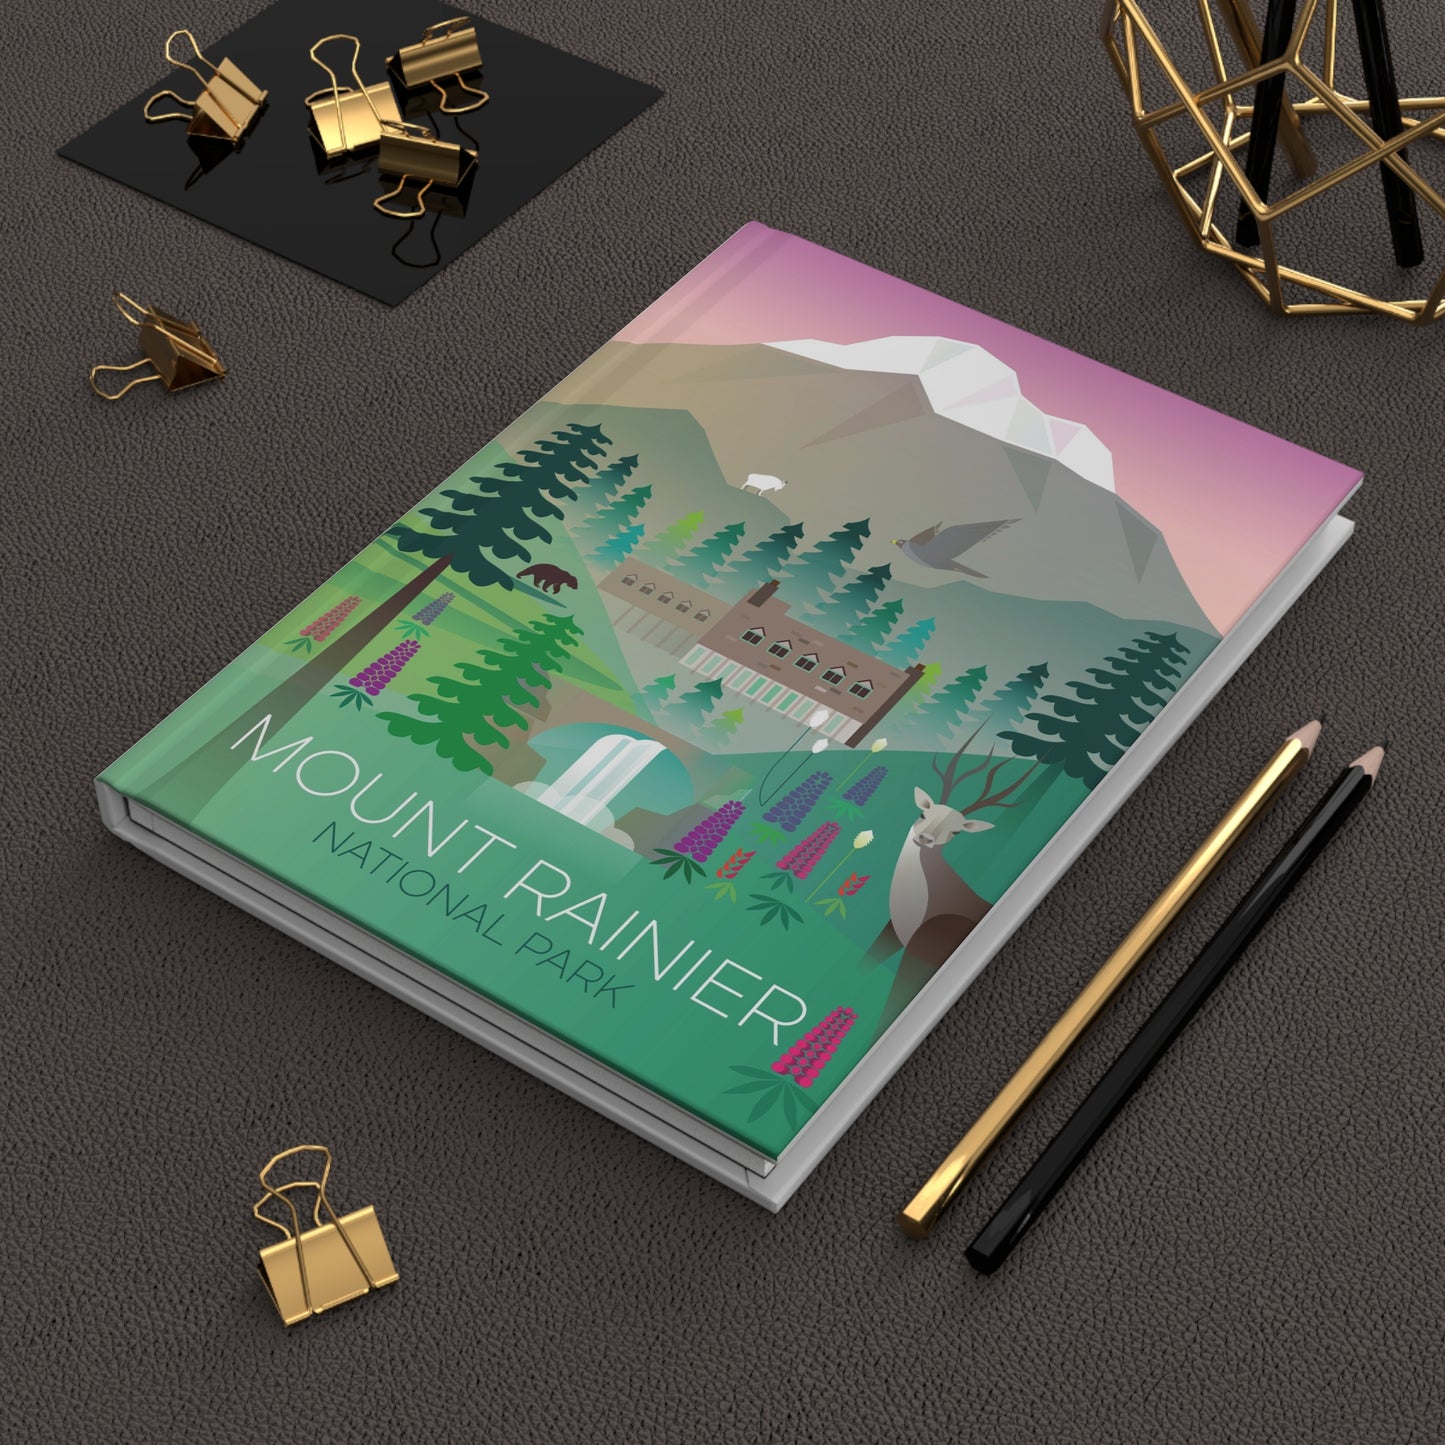 Mount Rainier National Park Hardcover Journal